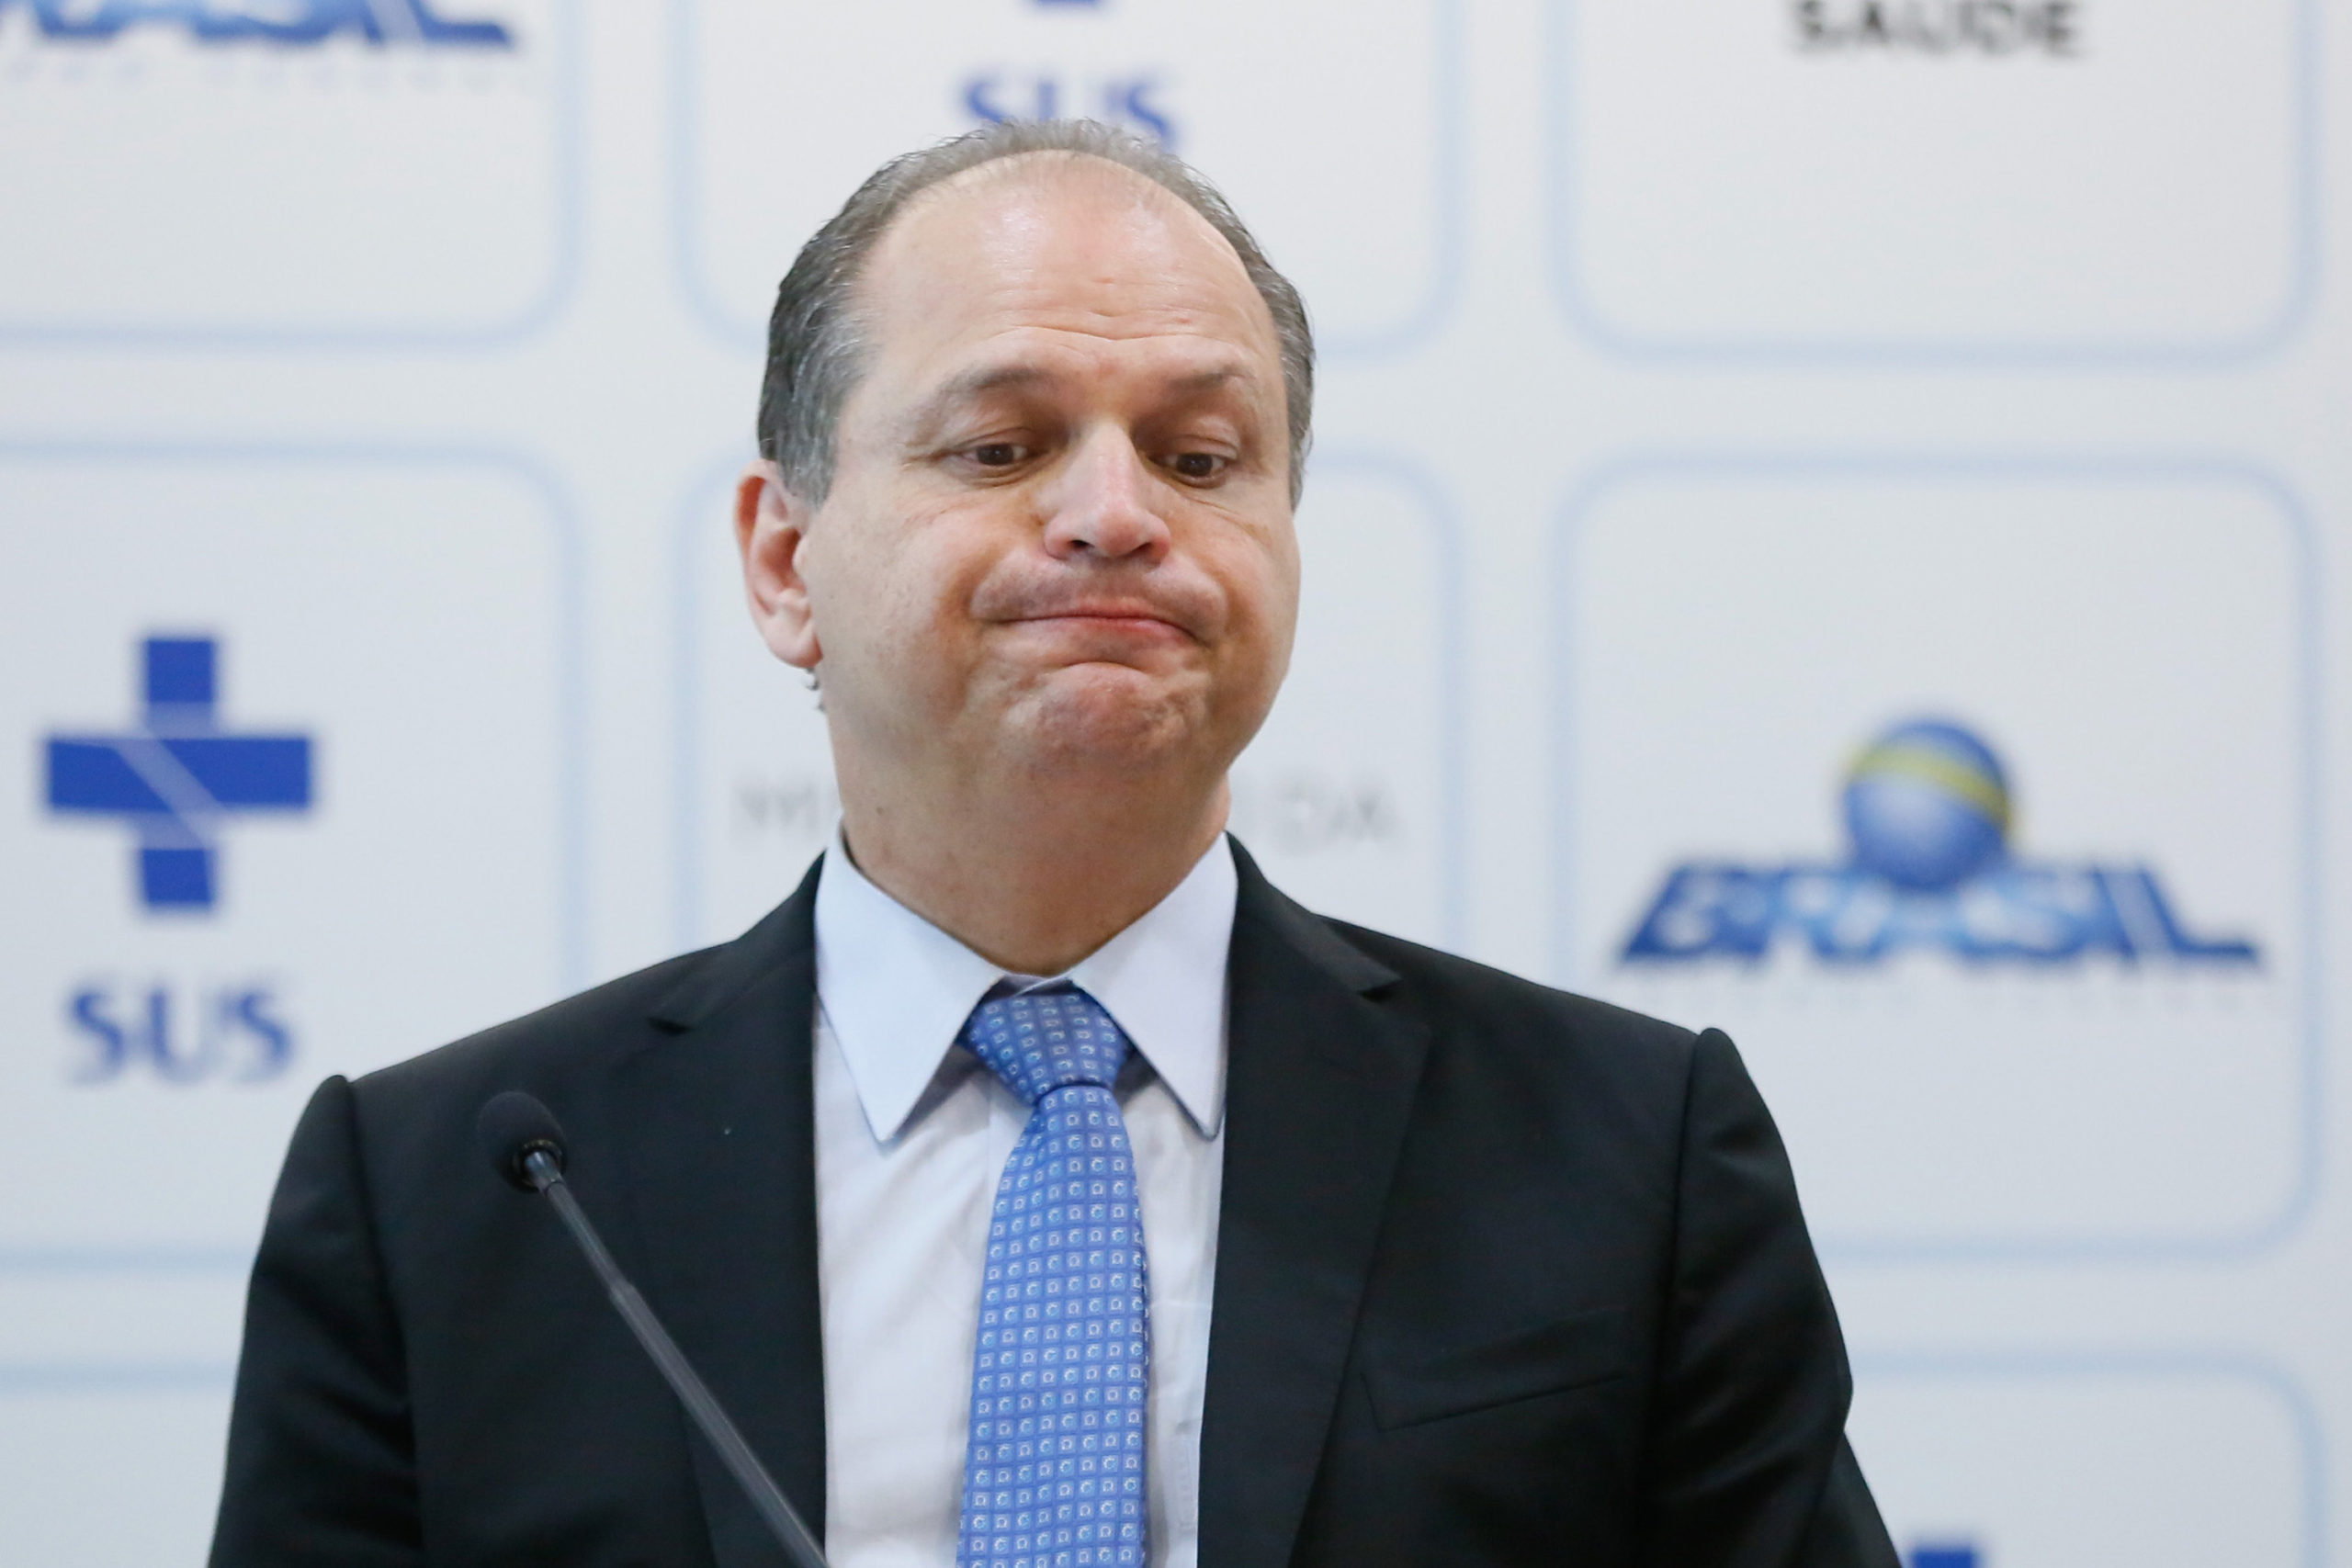 Novo líder de Bolsonaro é acusado de ter autorizado pagamento de R$ 19 milhões a empresa que não forneceu serviço